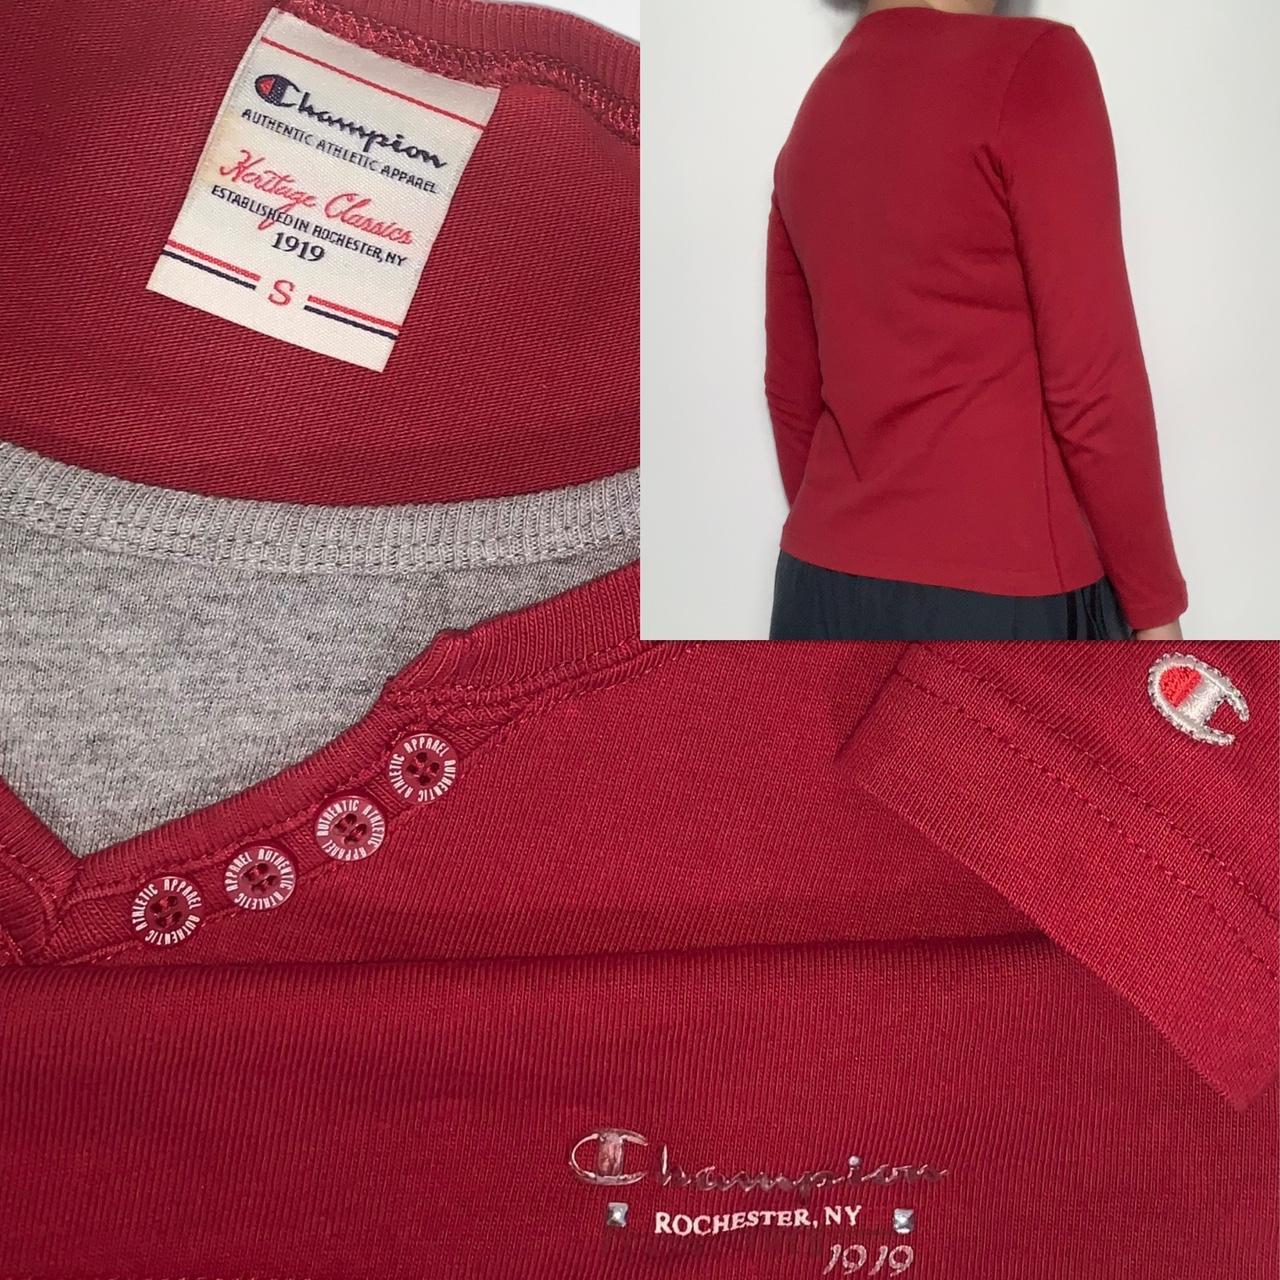 Vintage 90s old label Champion red v-neck long-sleeved t-shirt